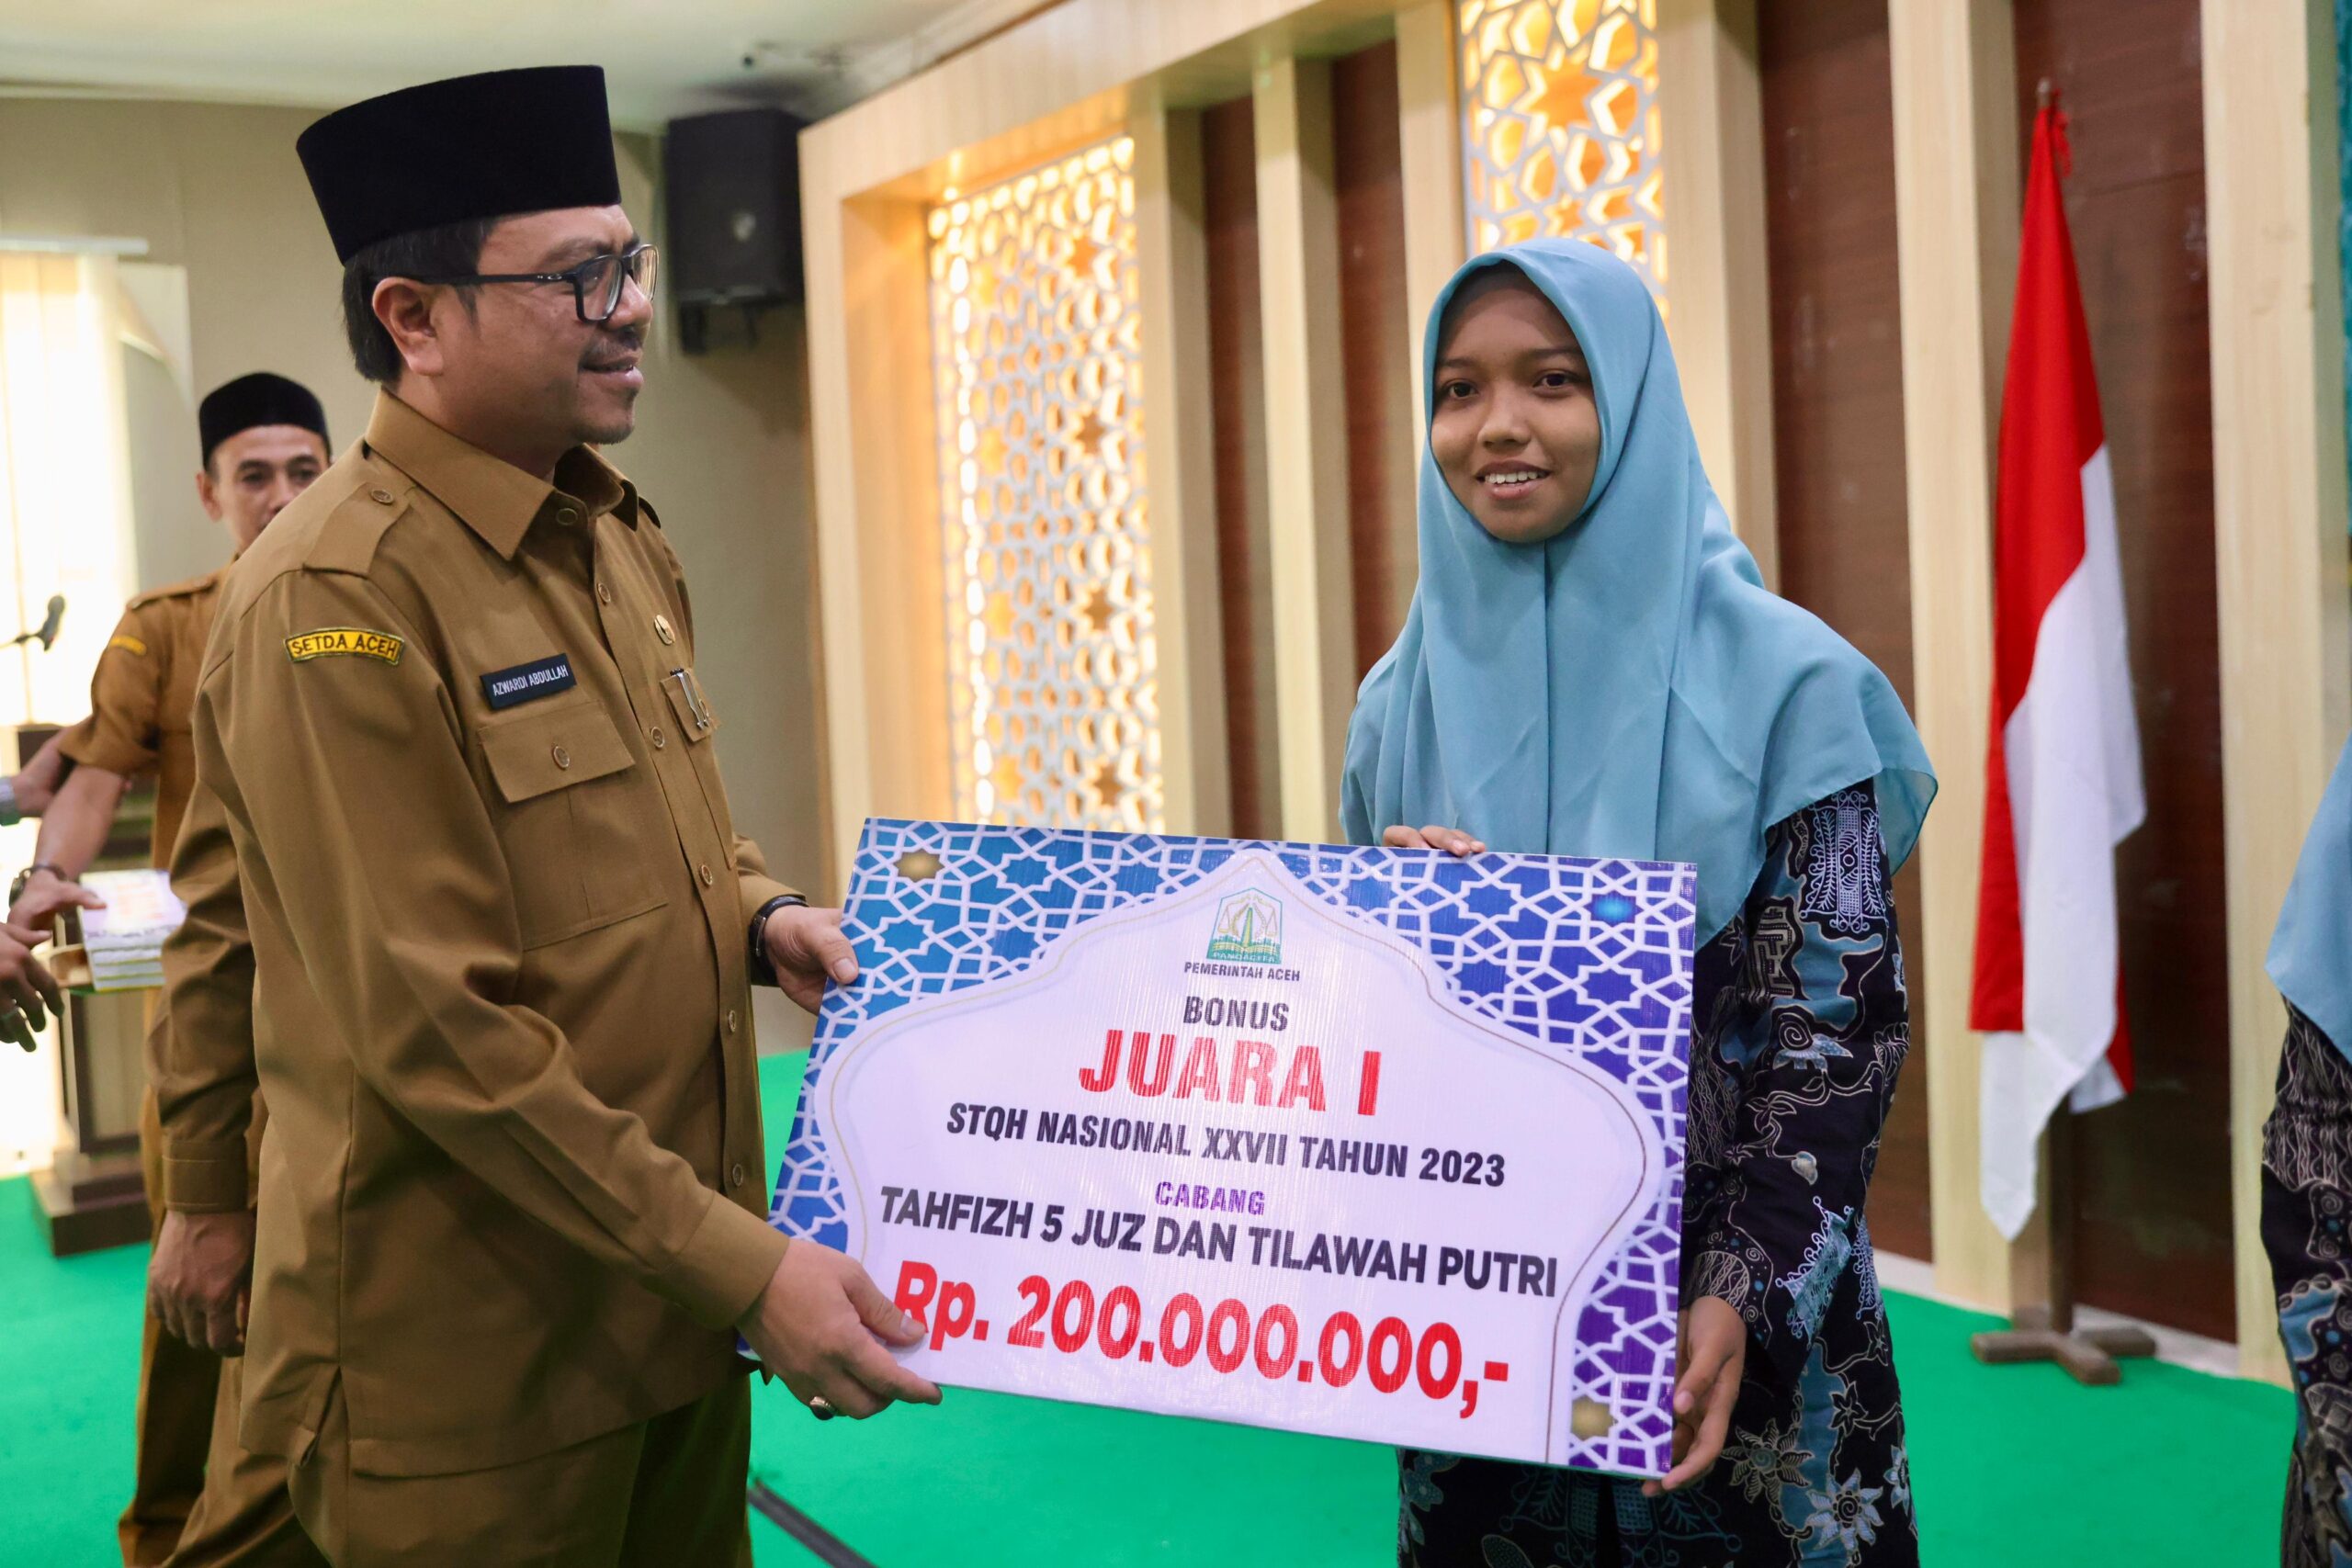 Pj Sekda Serahkan Bonus Ratusan Juta untuk Juara STQH Nasional dari Aceh